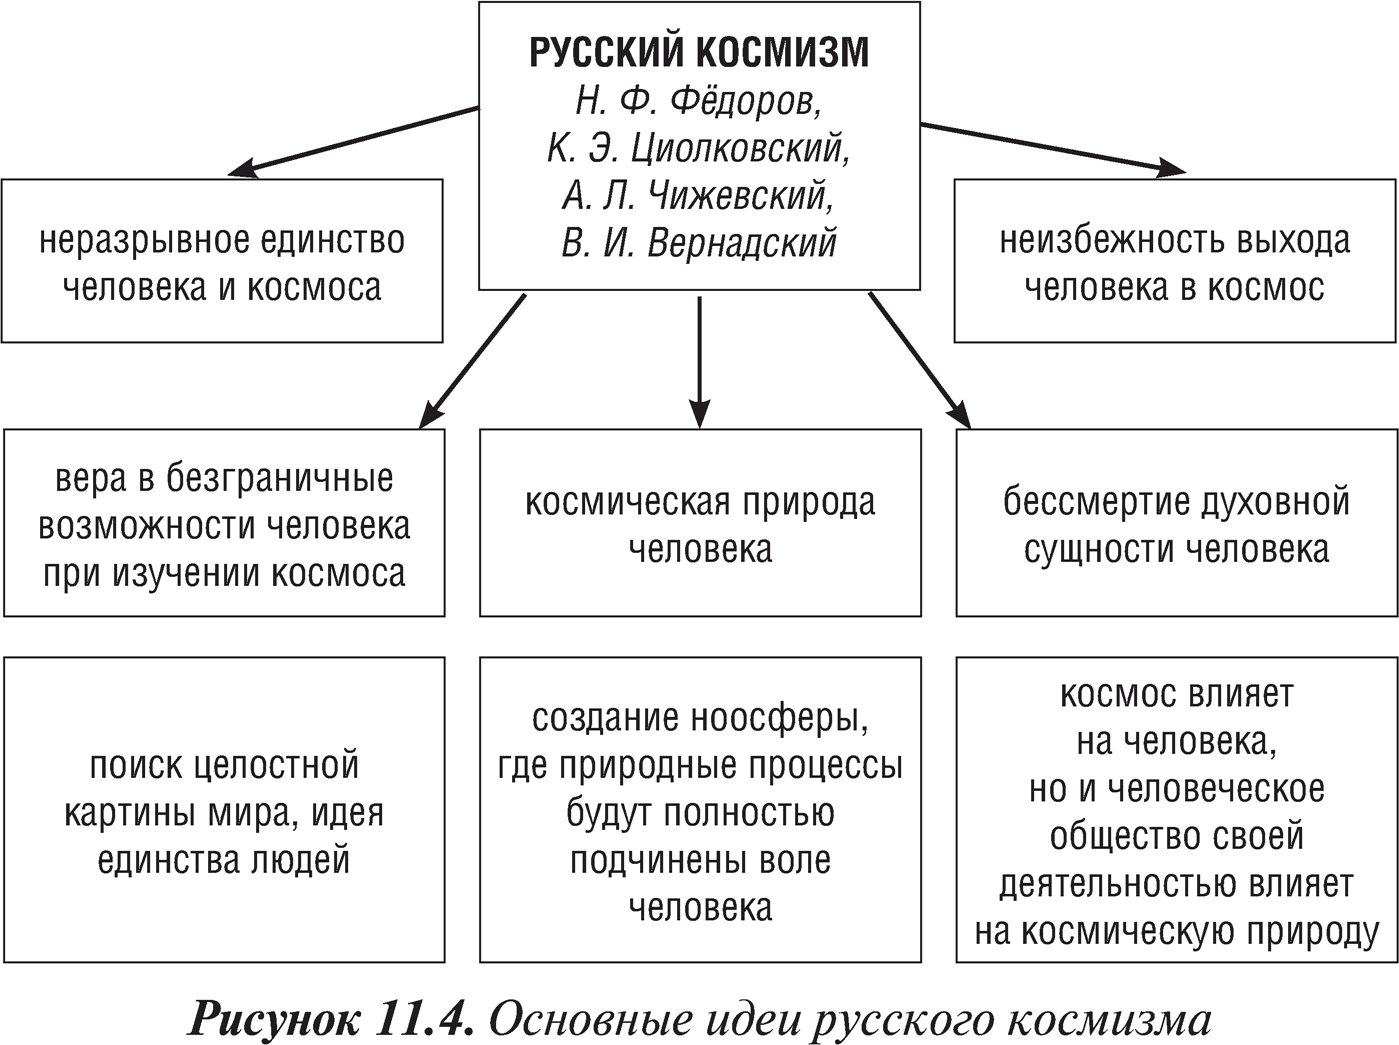 Основные идеи русского космизма